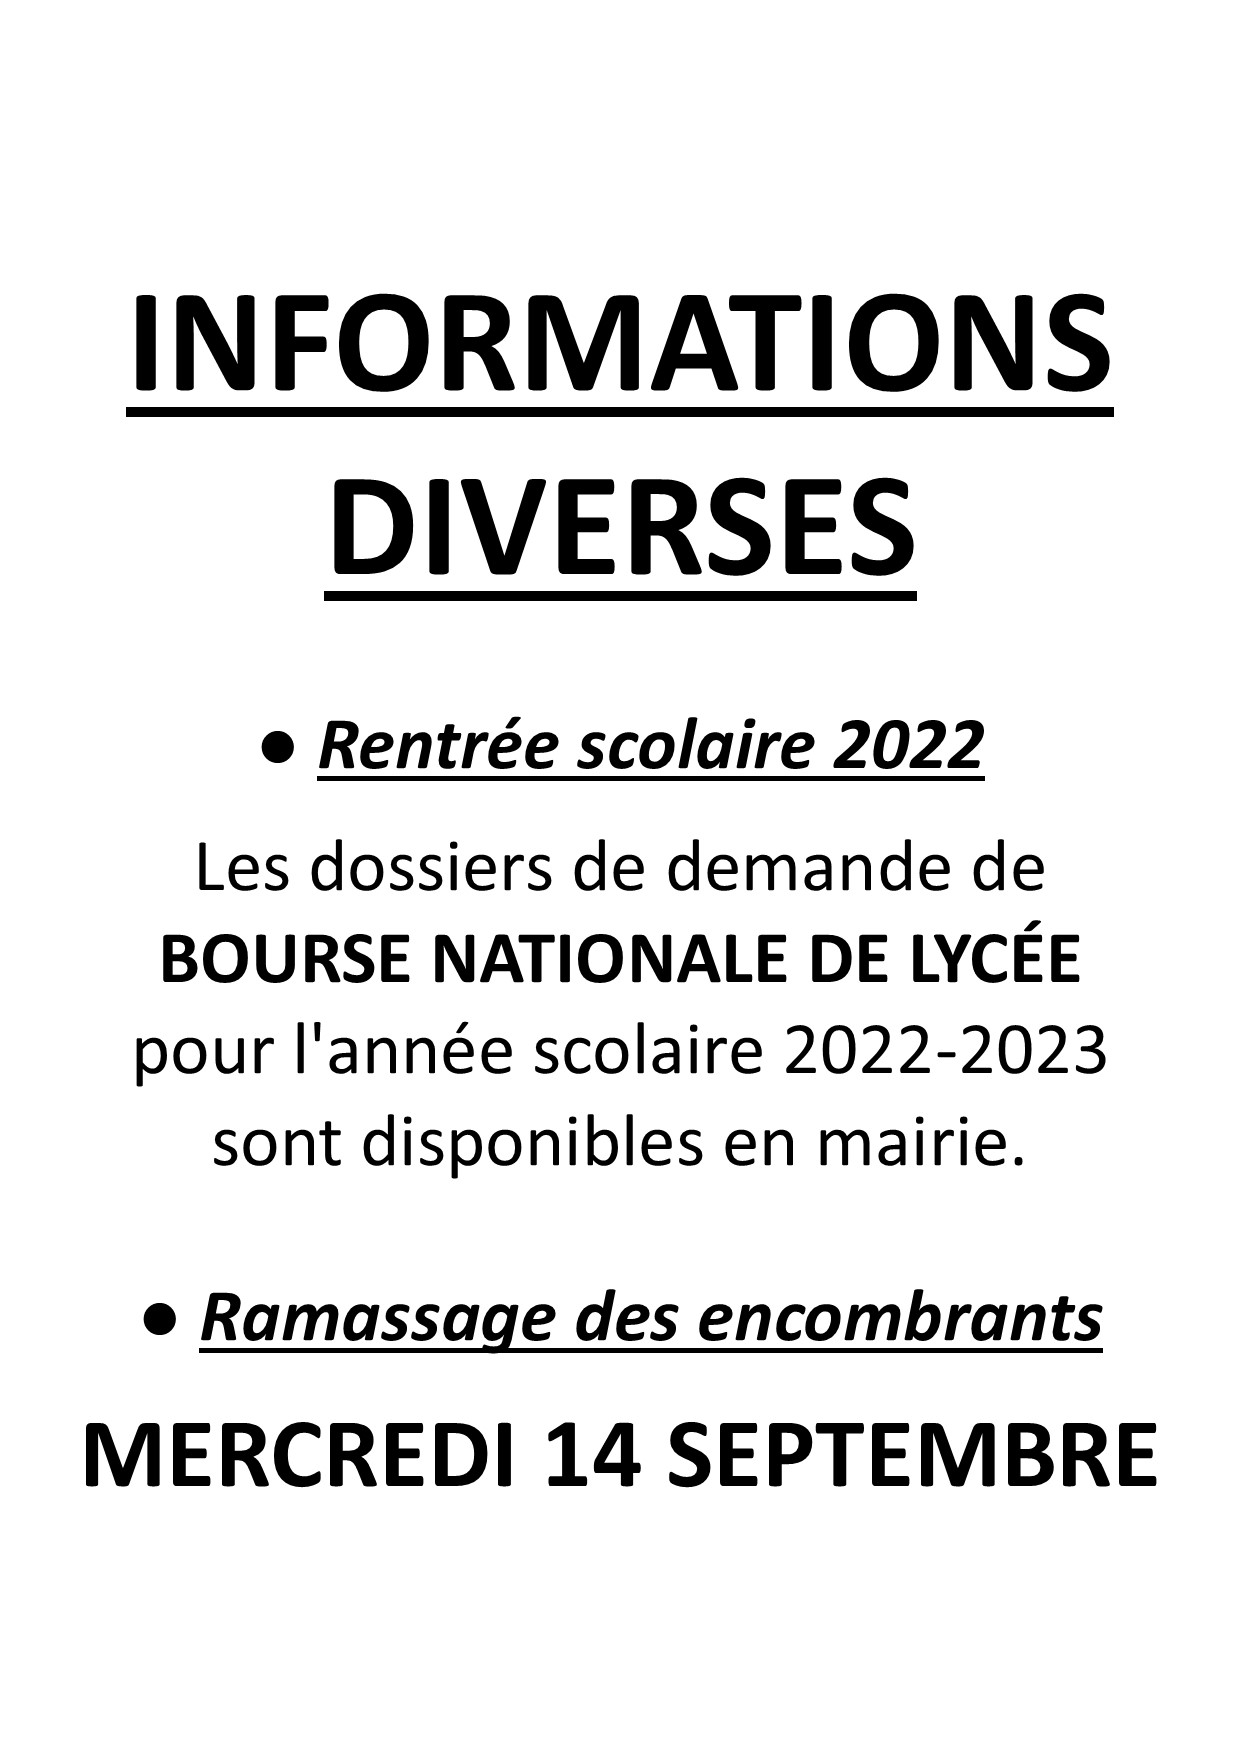 Infos_diverses_septembre_2022.jpg